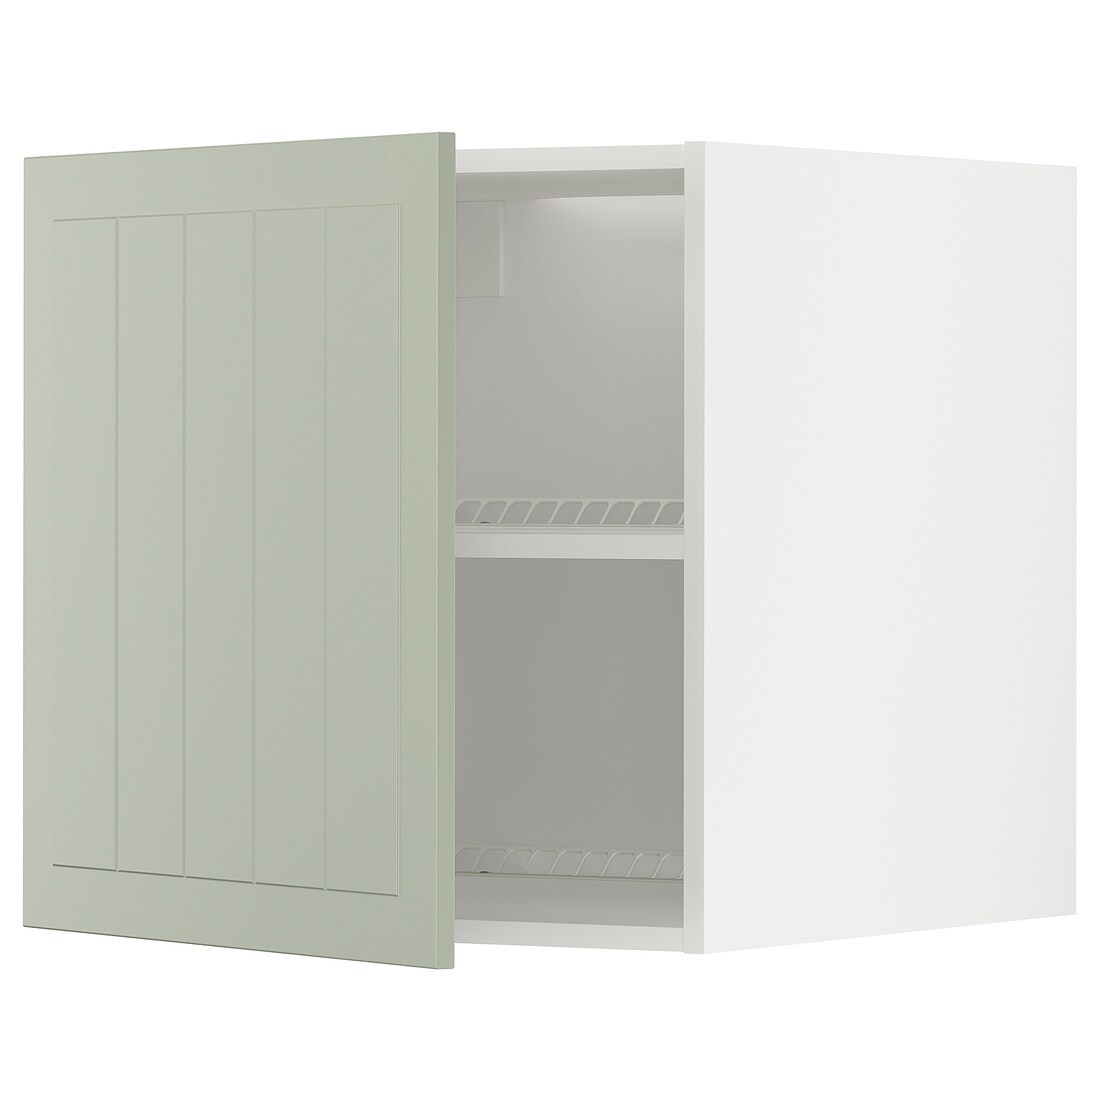 METOD МЕТОД Верхня шафа для холодильника / морозильника, білий / Stensund світло-зелений, 60x60 см